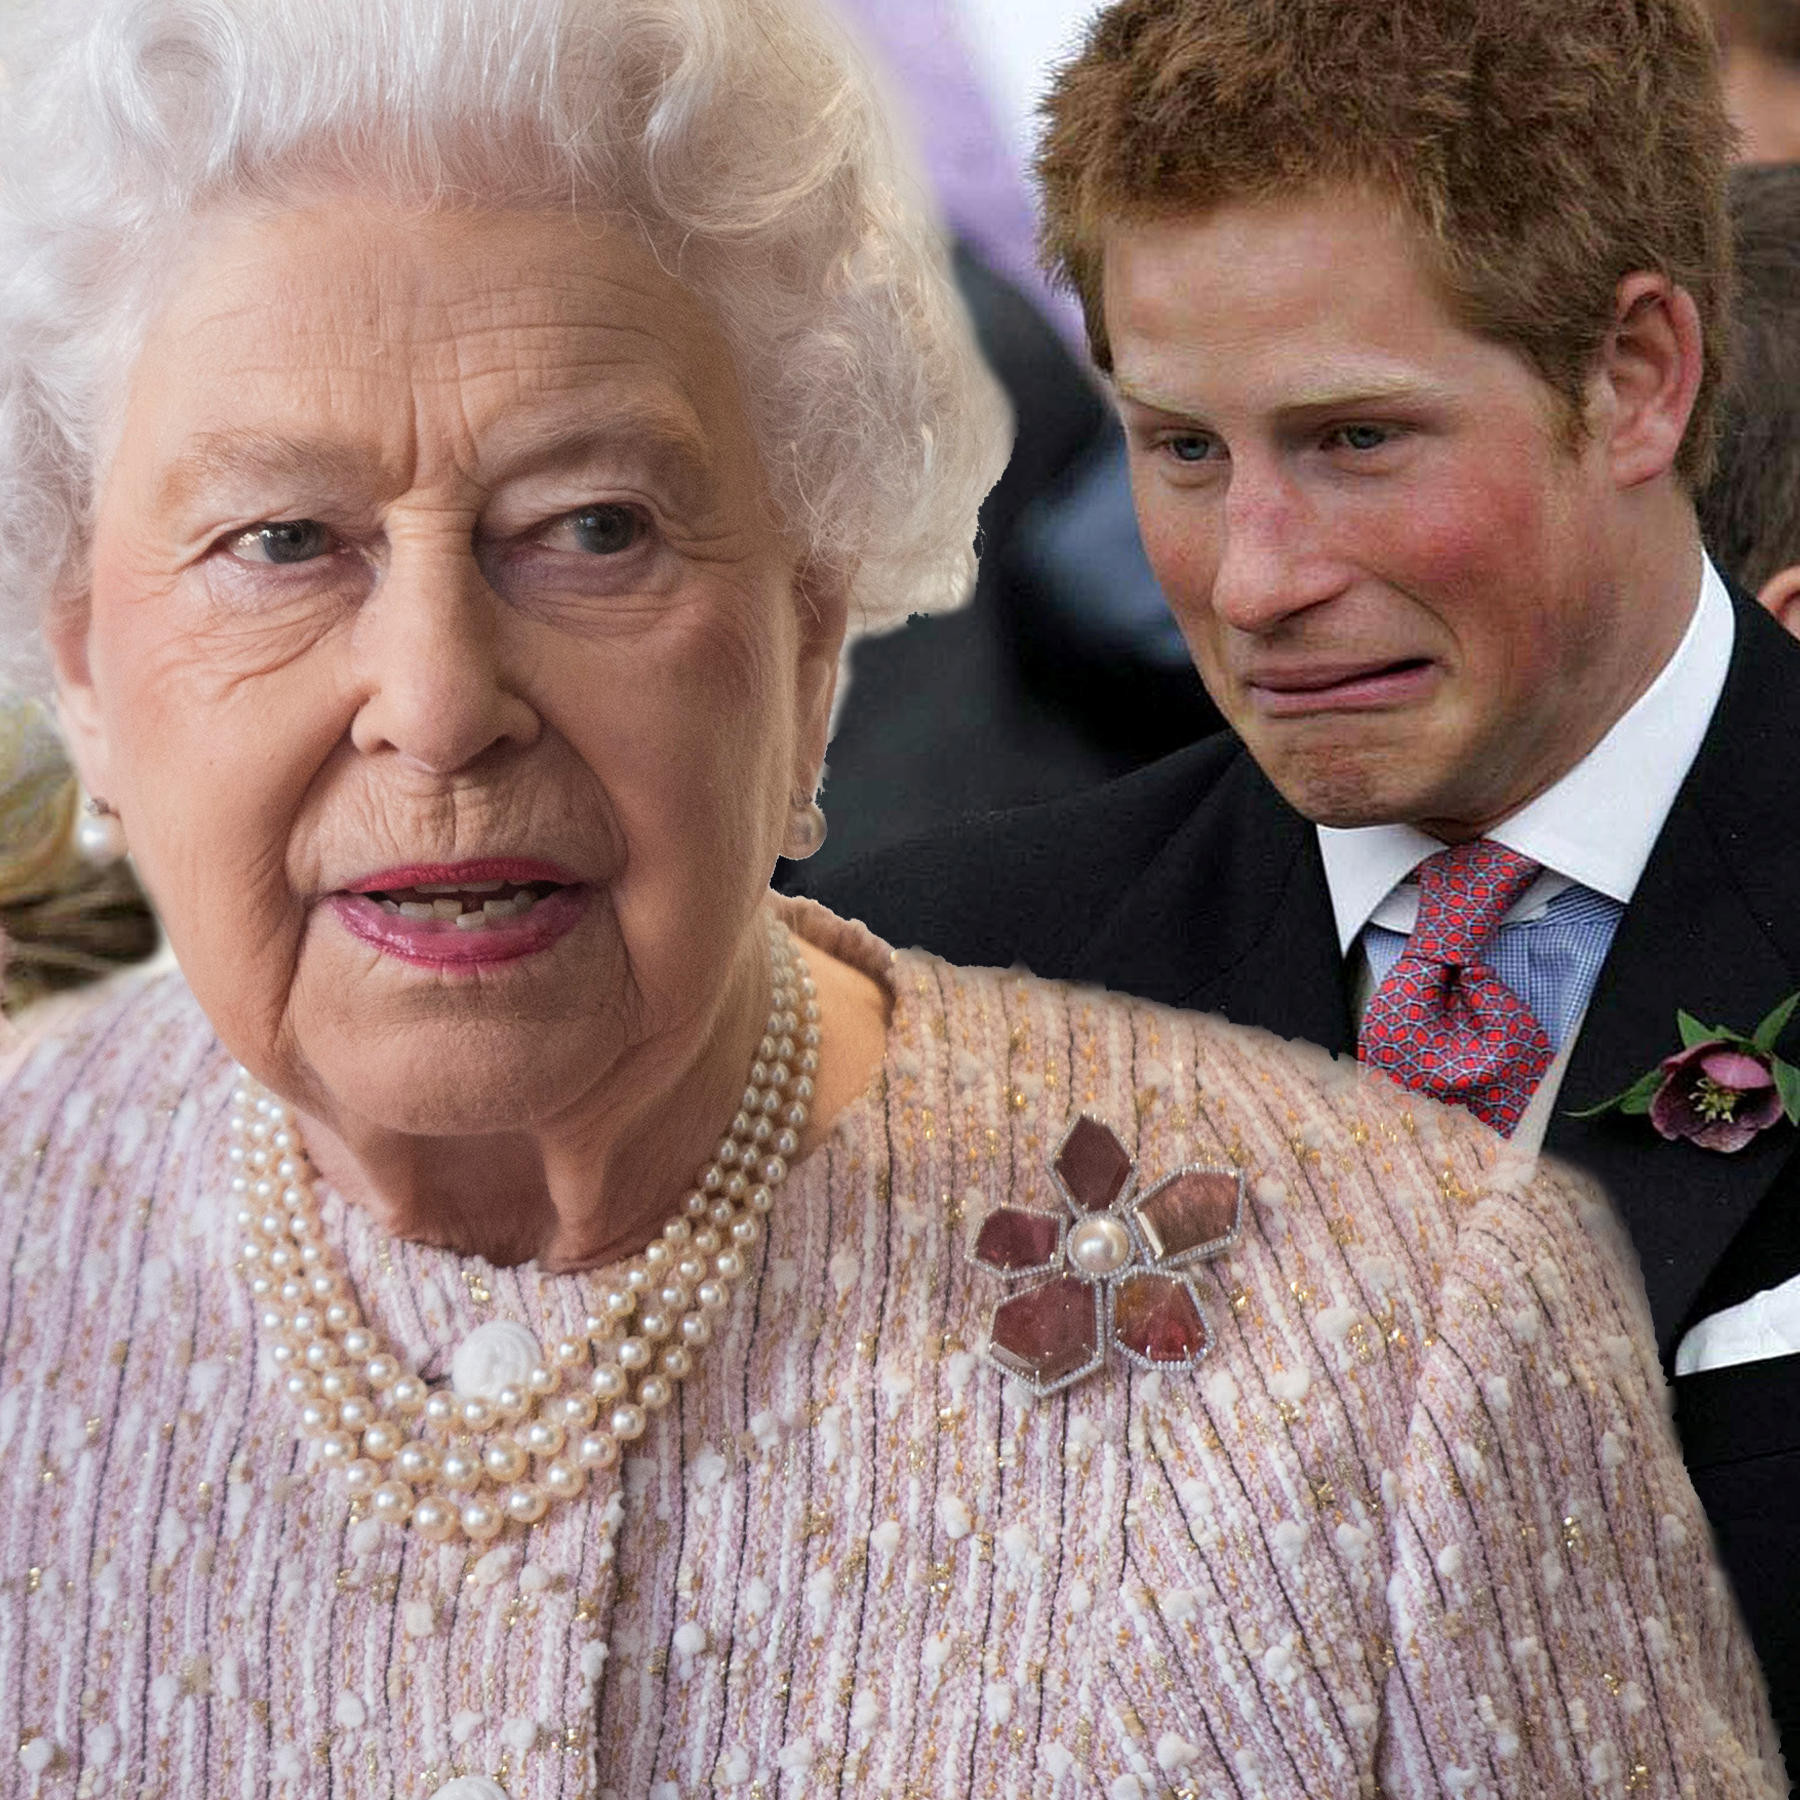 Hochzeit England Harry
 Prinz Harry Meghan Markle Lässt Queen ihre Hochzeit